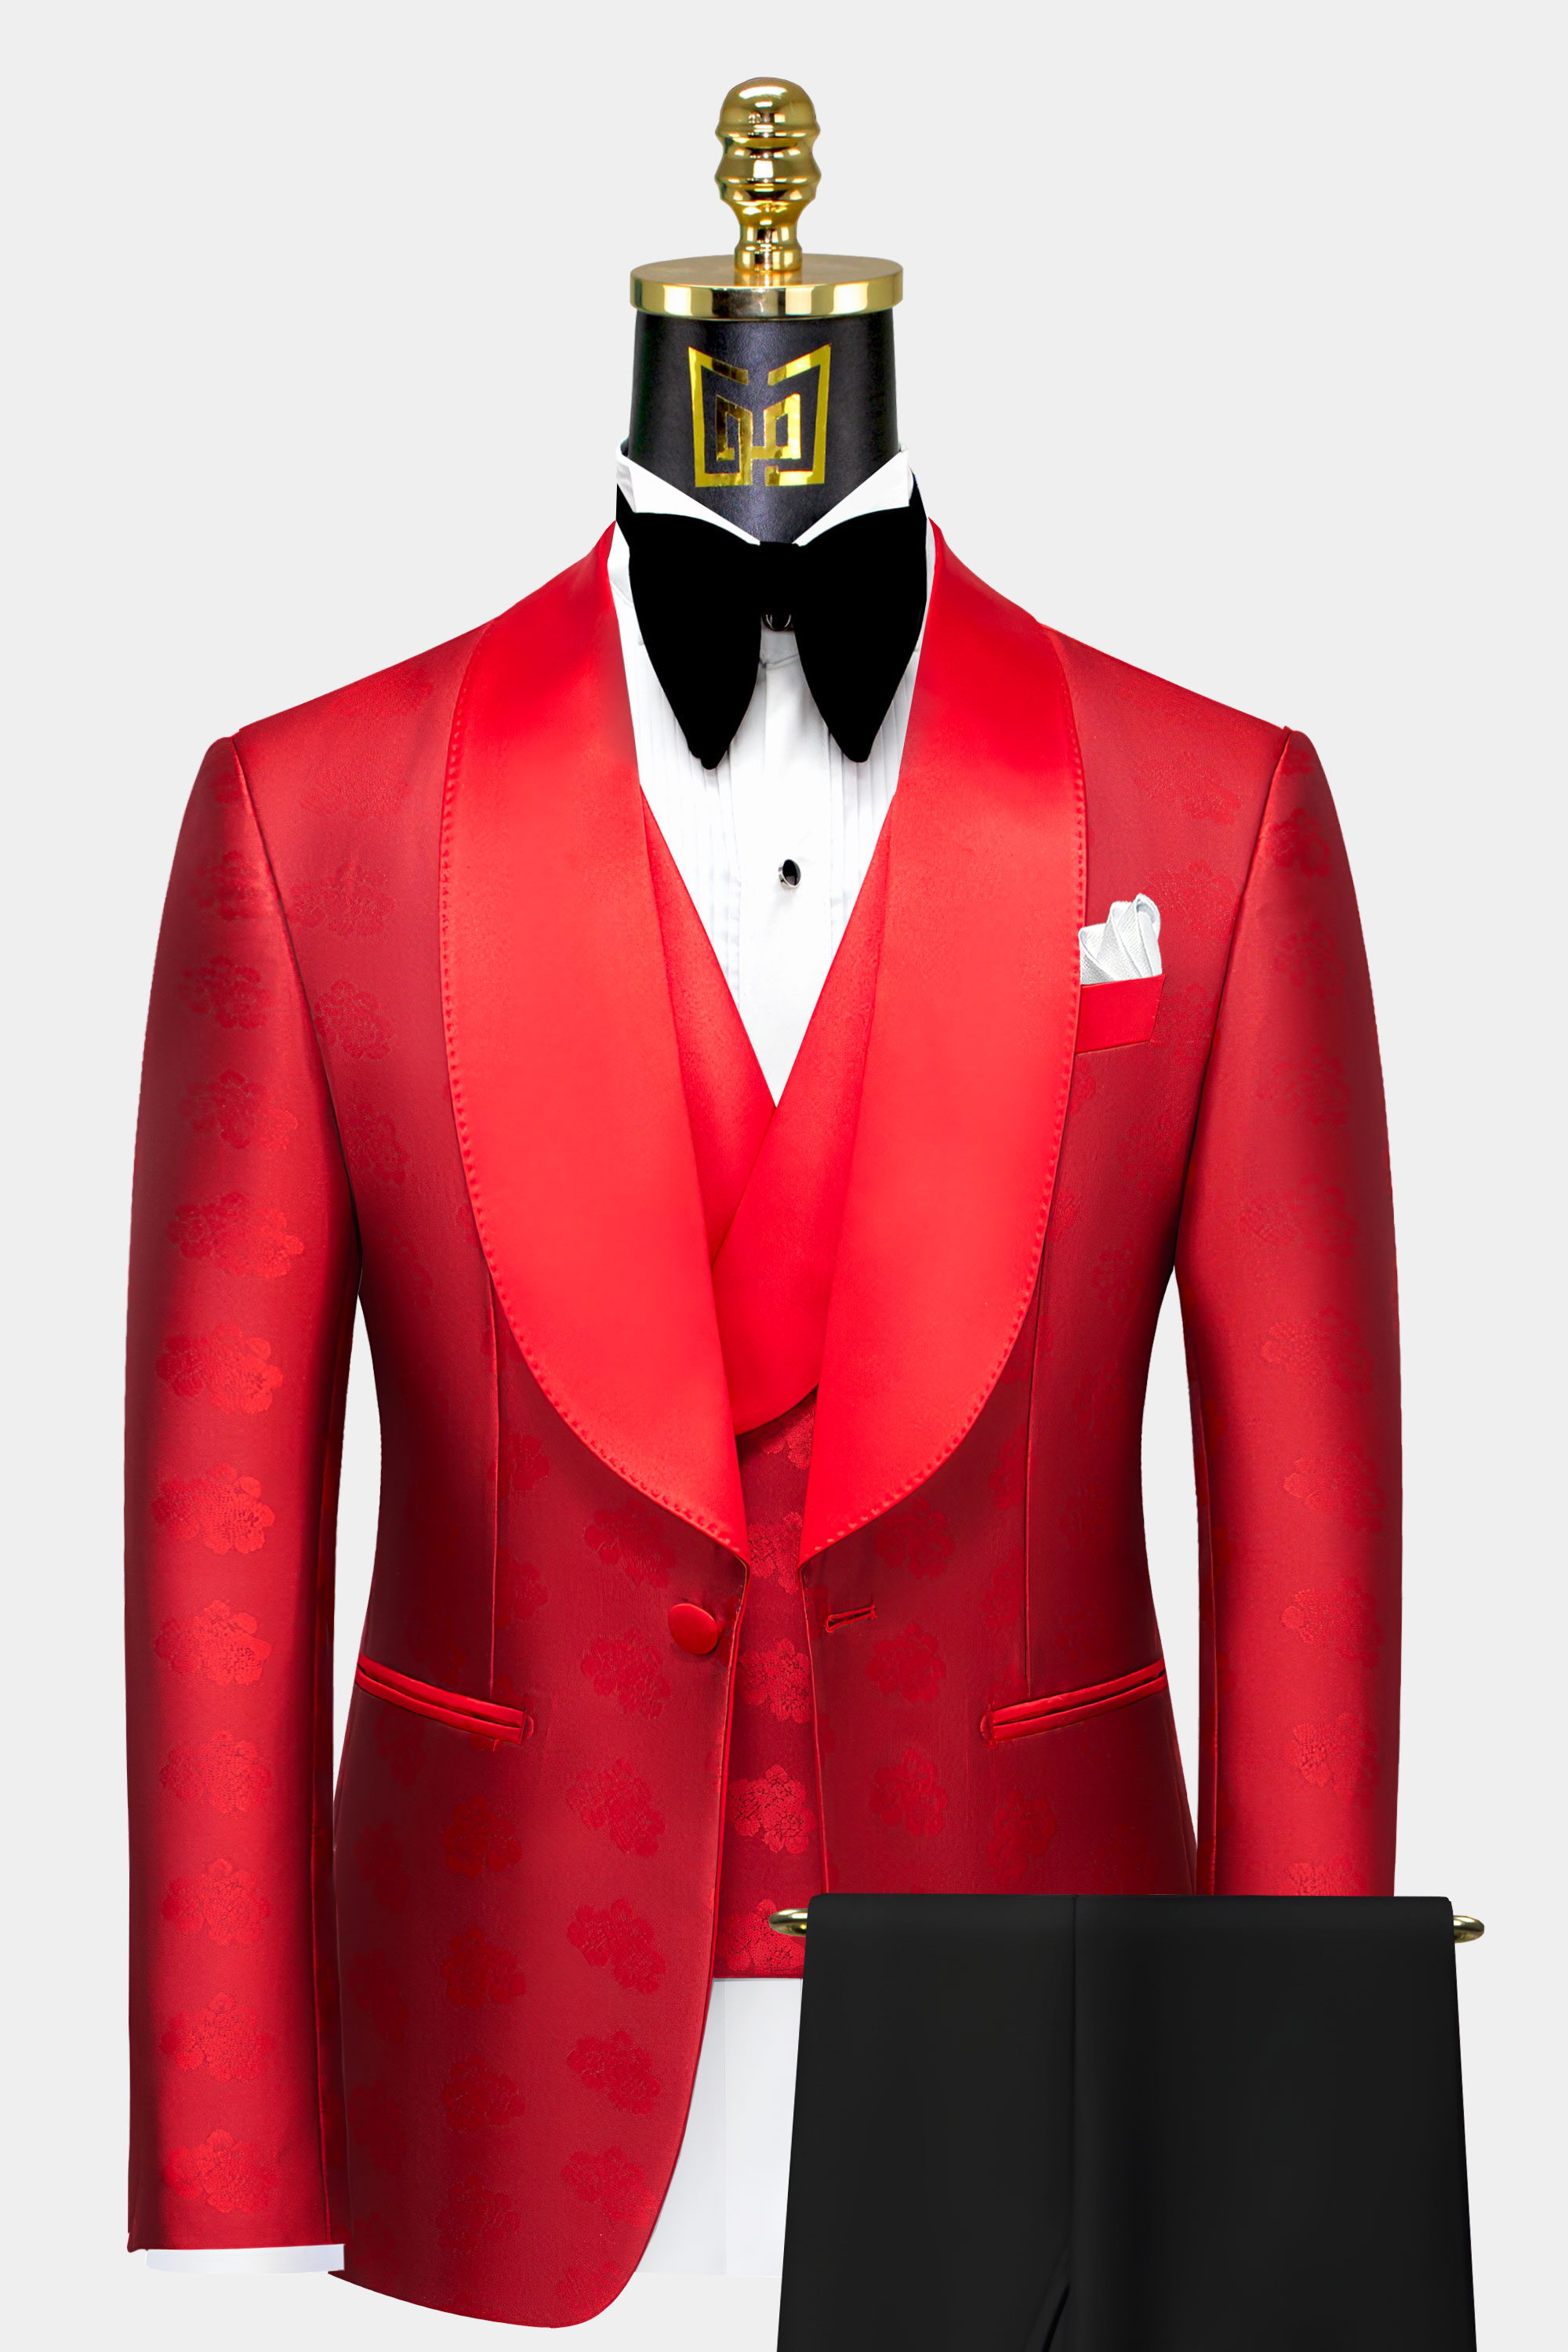 All Red Tuxedo Suit - 3 Piece | Gentleman's Guru